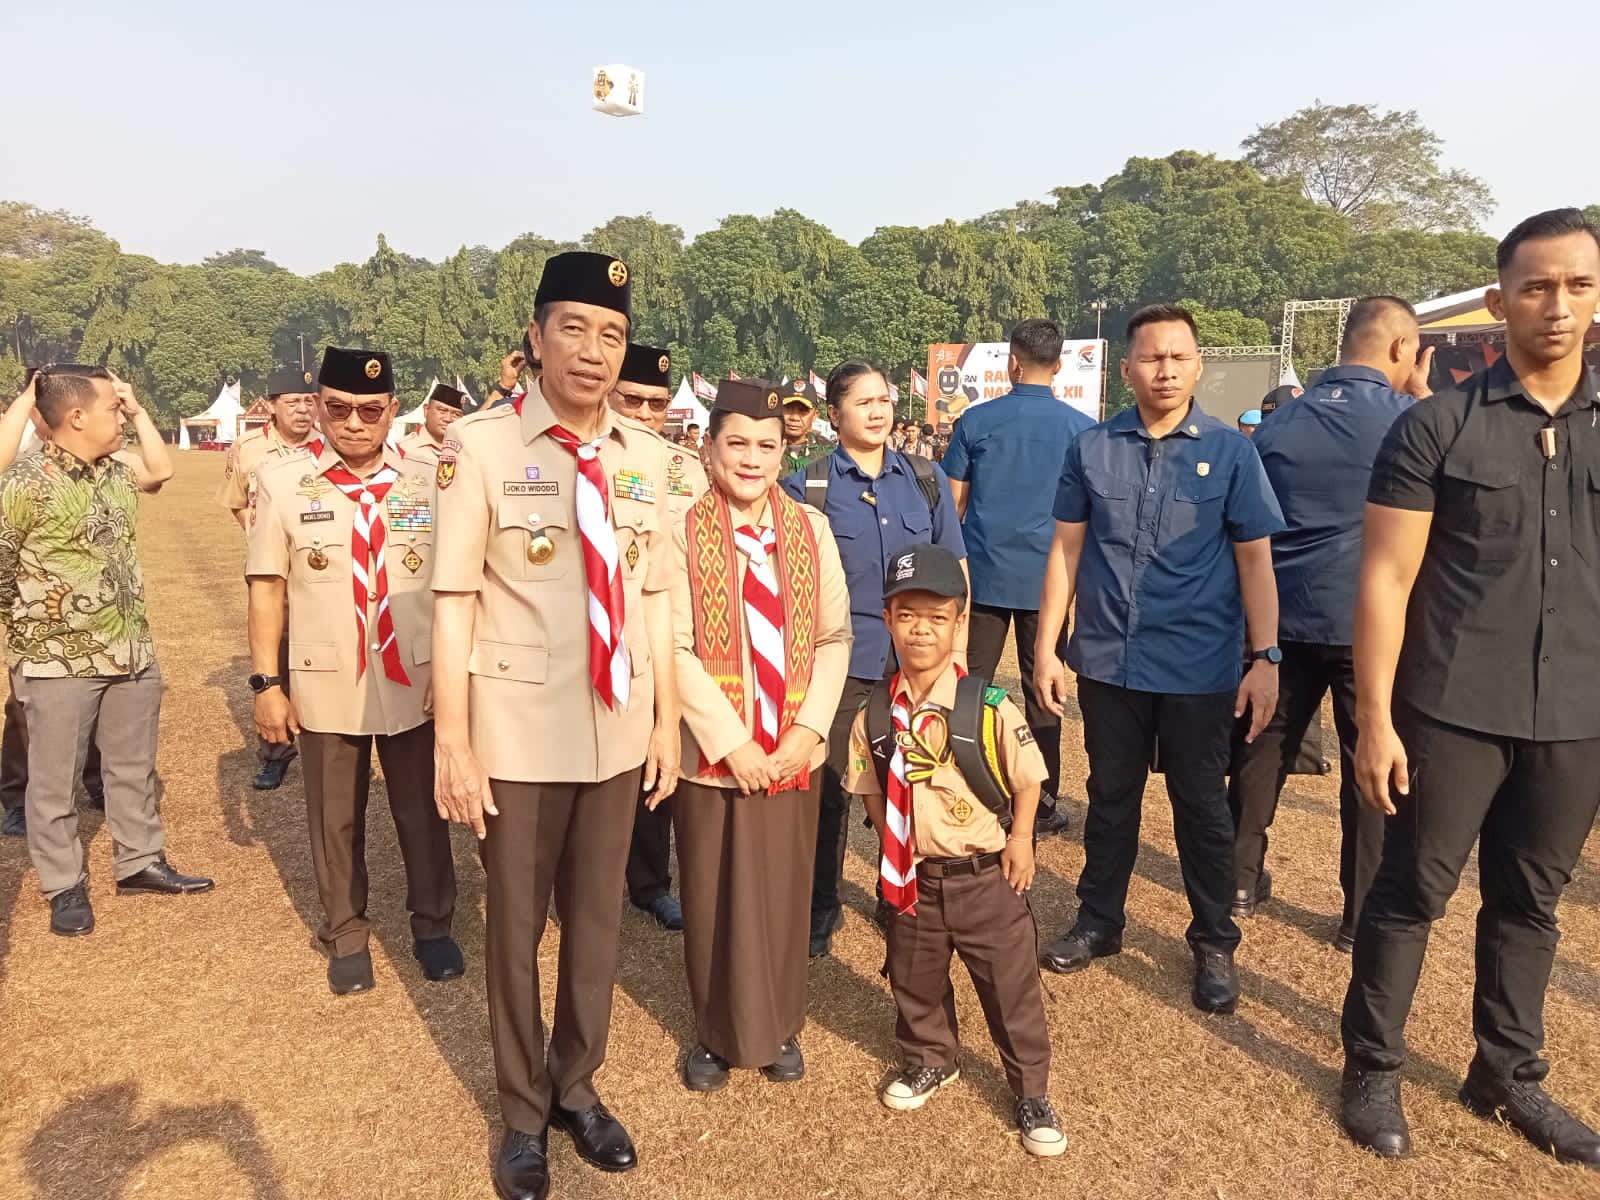 Anggota Pramuka Asal Sulsel Muhammad Hafid Peasso Terharu dan Bangga Diajak Foto Bareng Presiden Jokowi